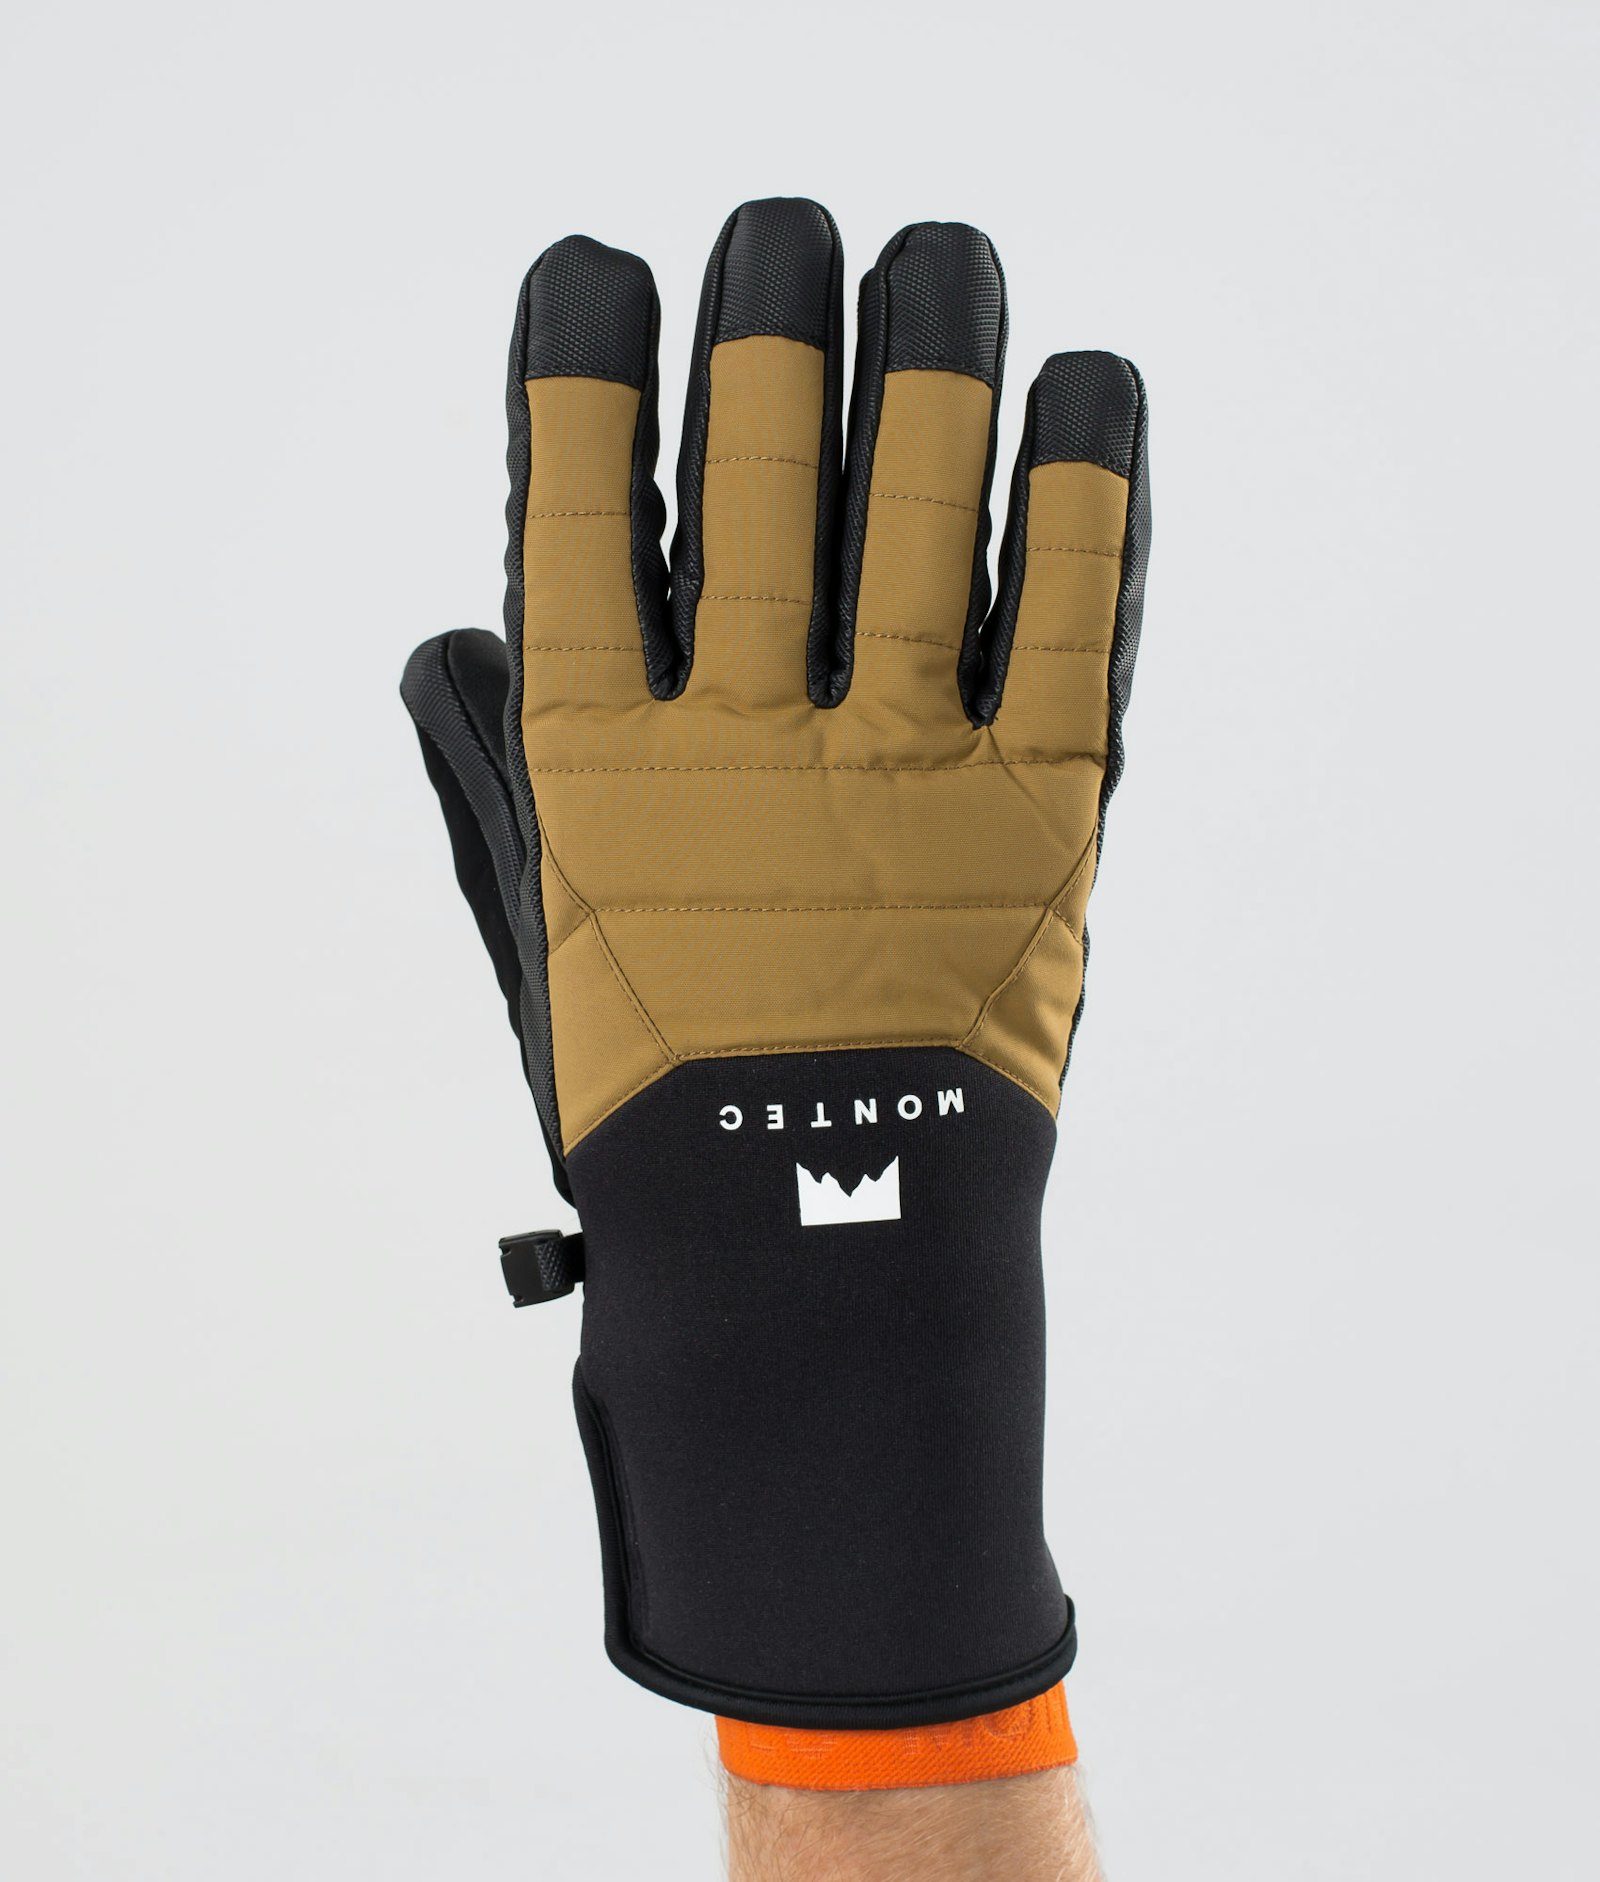 Kilo 2020 Ski Gloves Gold